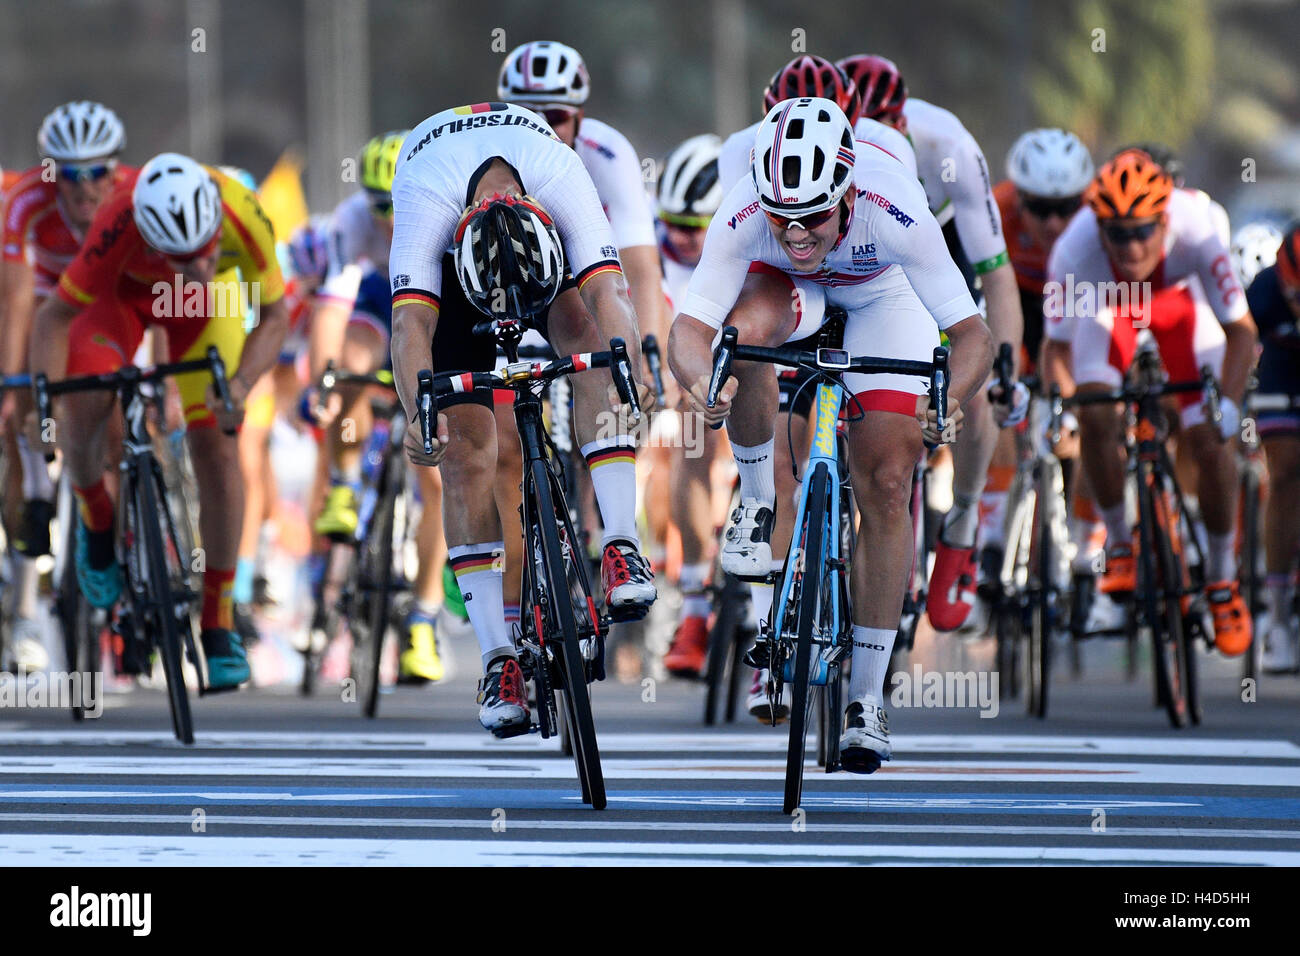 Norwegische Kristoffer Halvorsen (R) gewinnt vor der deutschen Pascal Ackermann (L) in den Männern U23 Straßenrennen bei den 2016 UCI Straßen Rad-WM in Doha, Katar, Donnerstag, 13. Oktober 2016. BELGA FOTO YORICK JANSENS Stockfoto